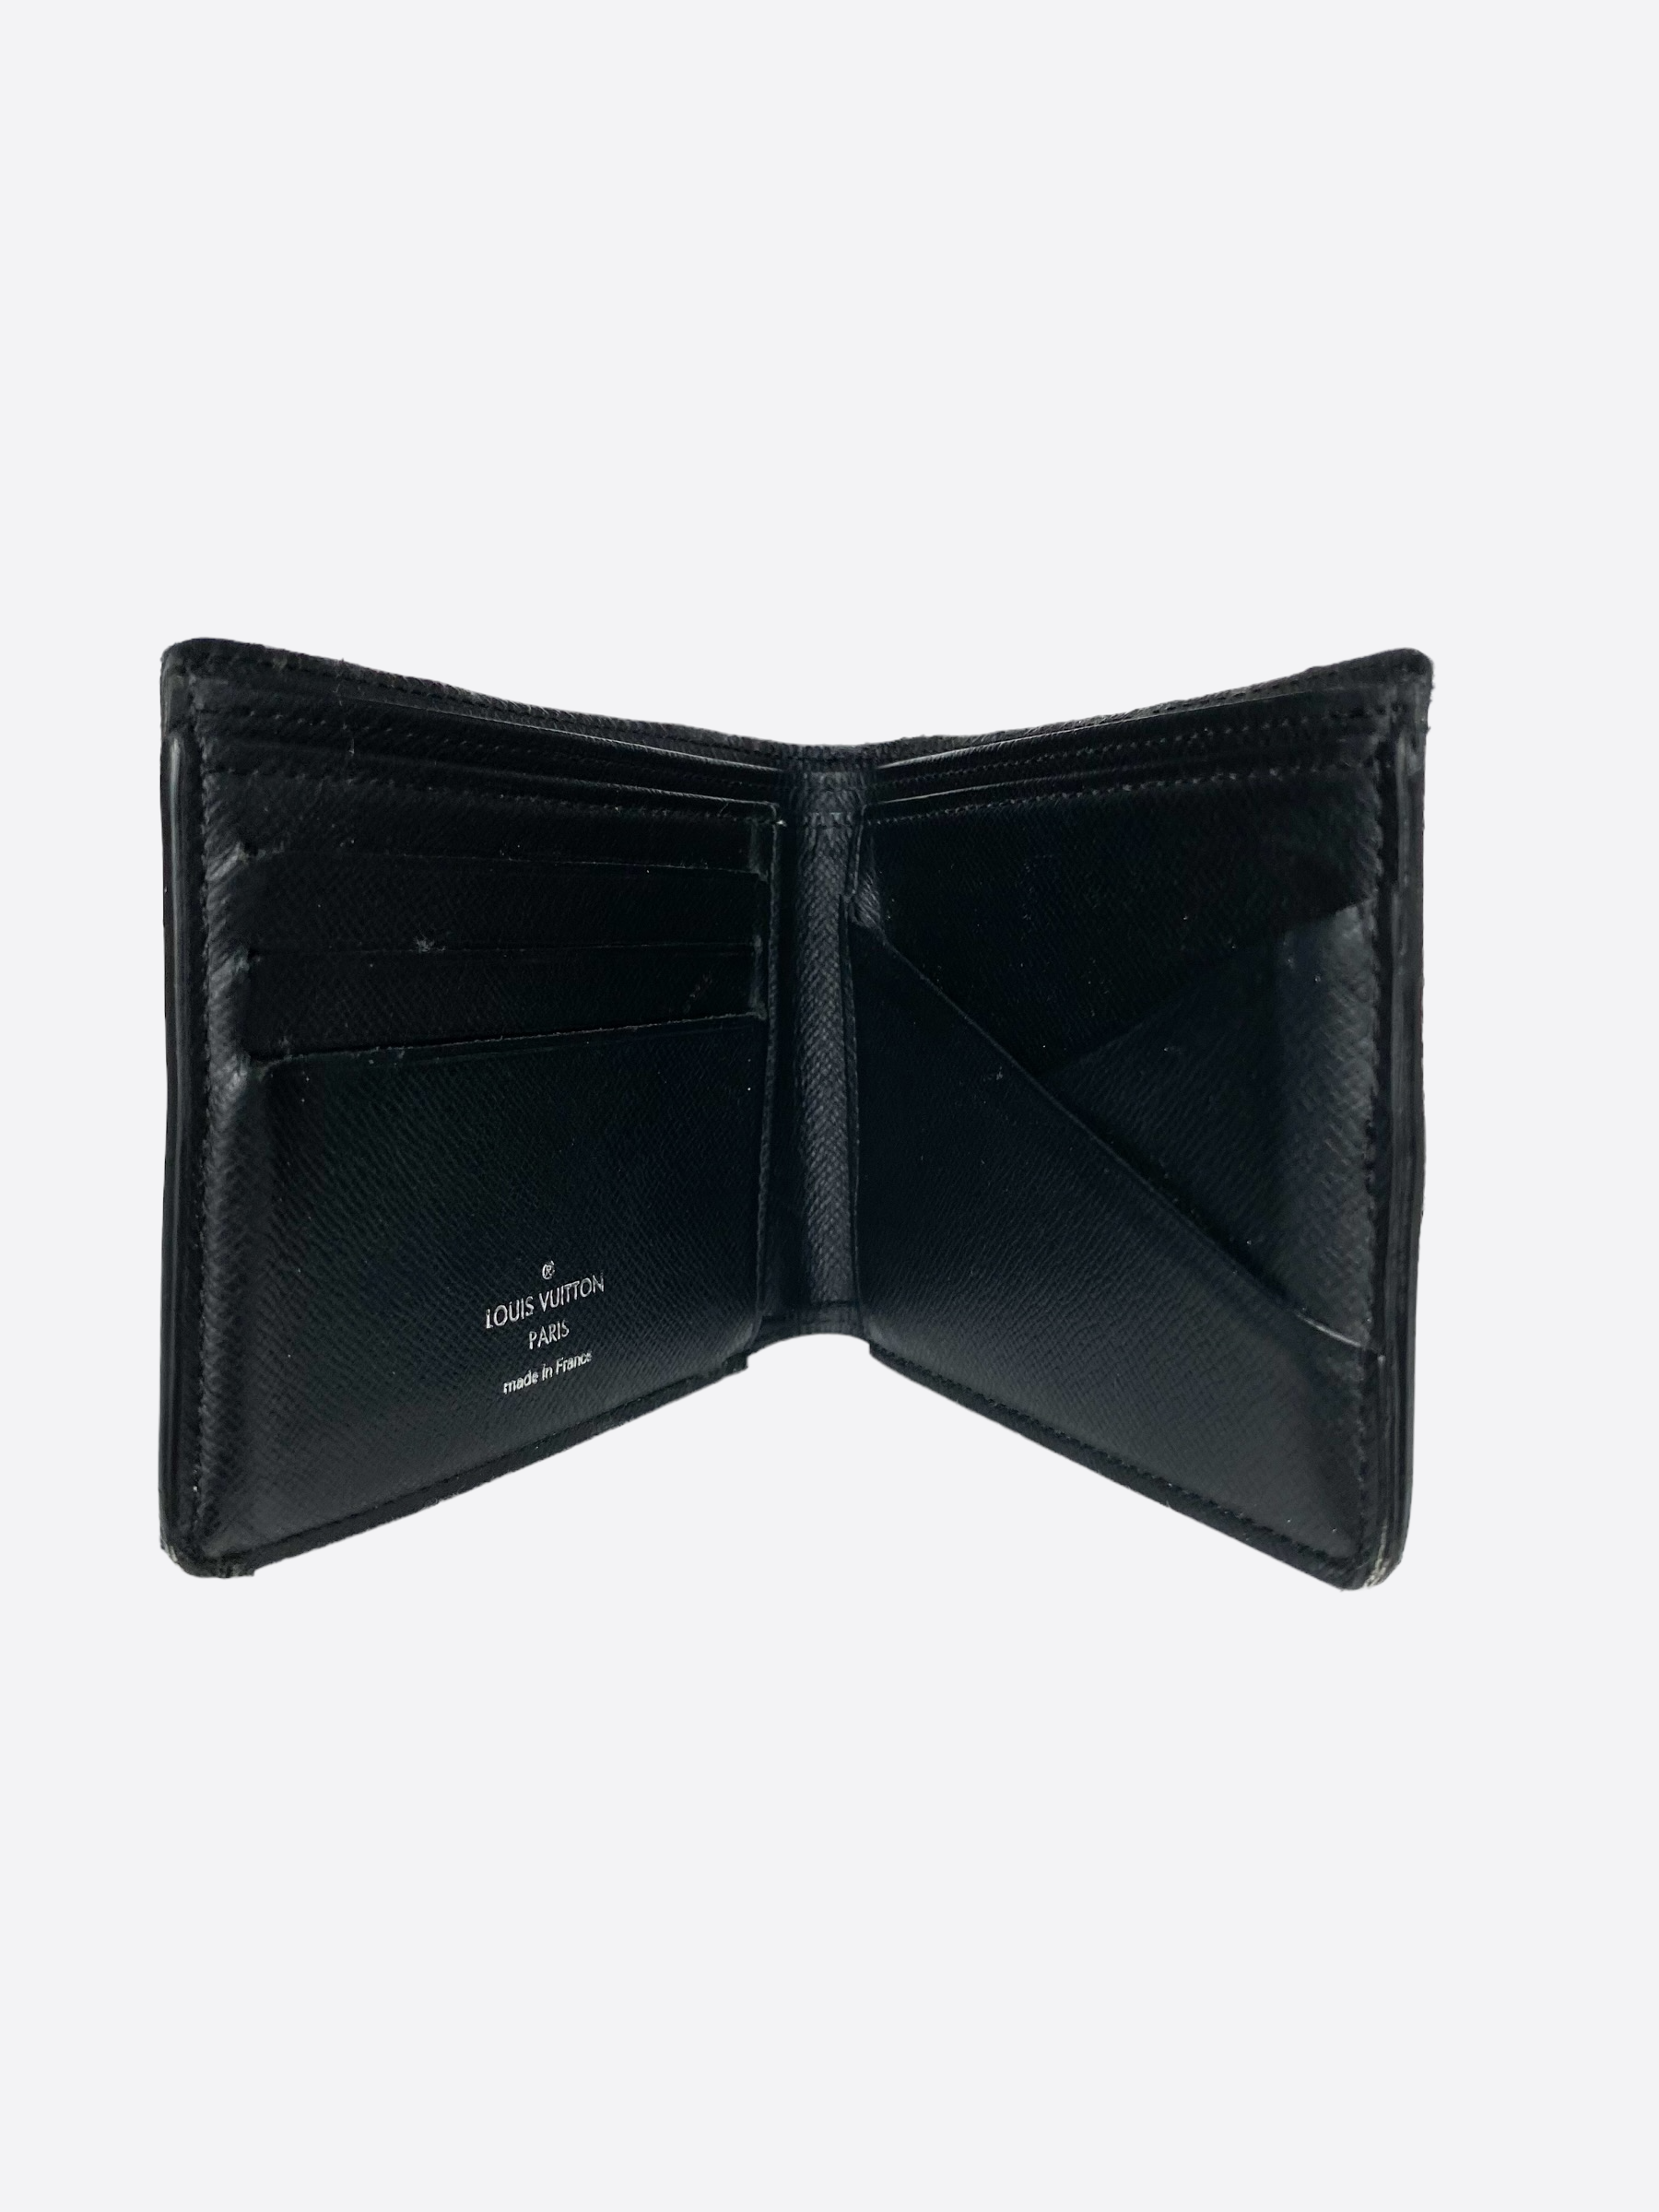 Preowned Authentic Louis Vuitton Monogram Eclipse Multiple Wallet